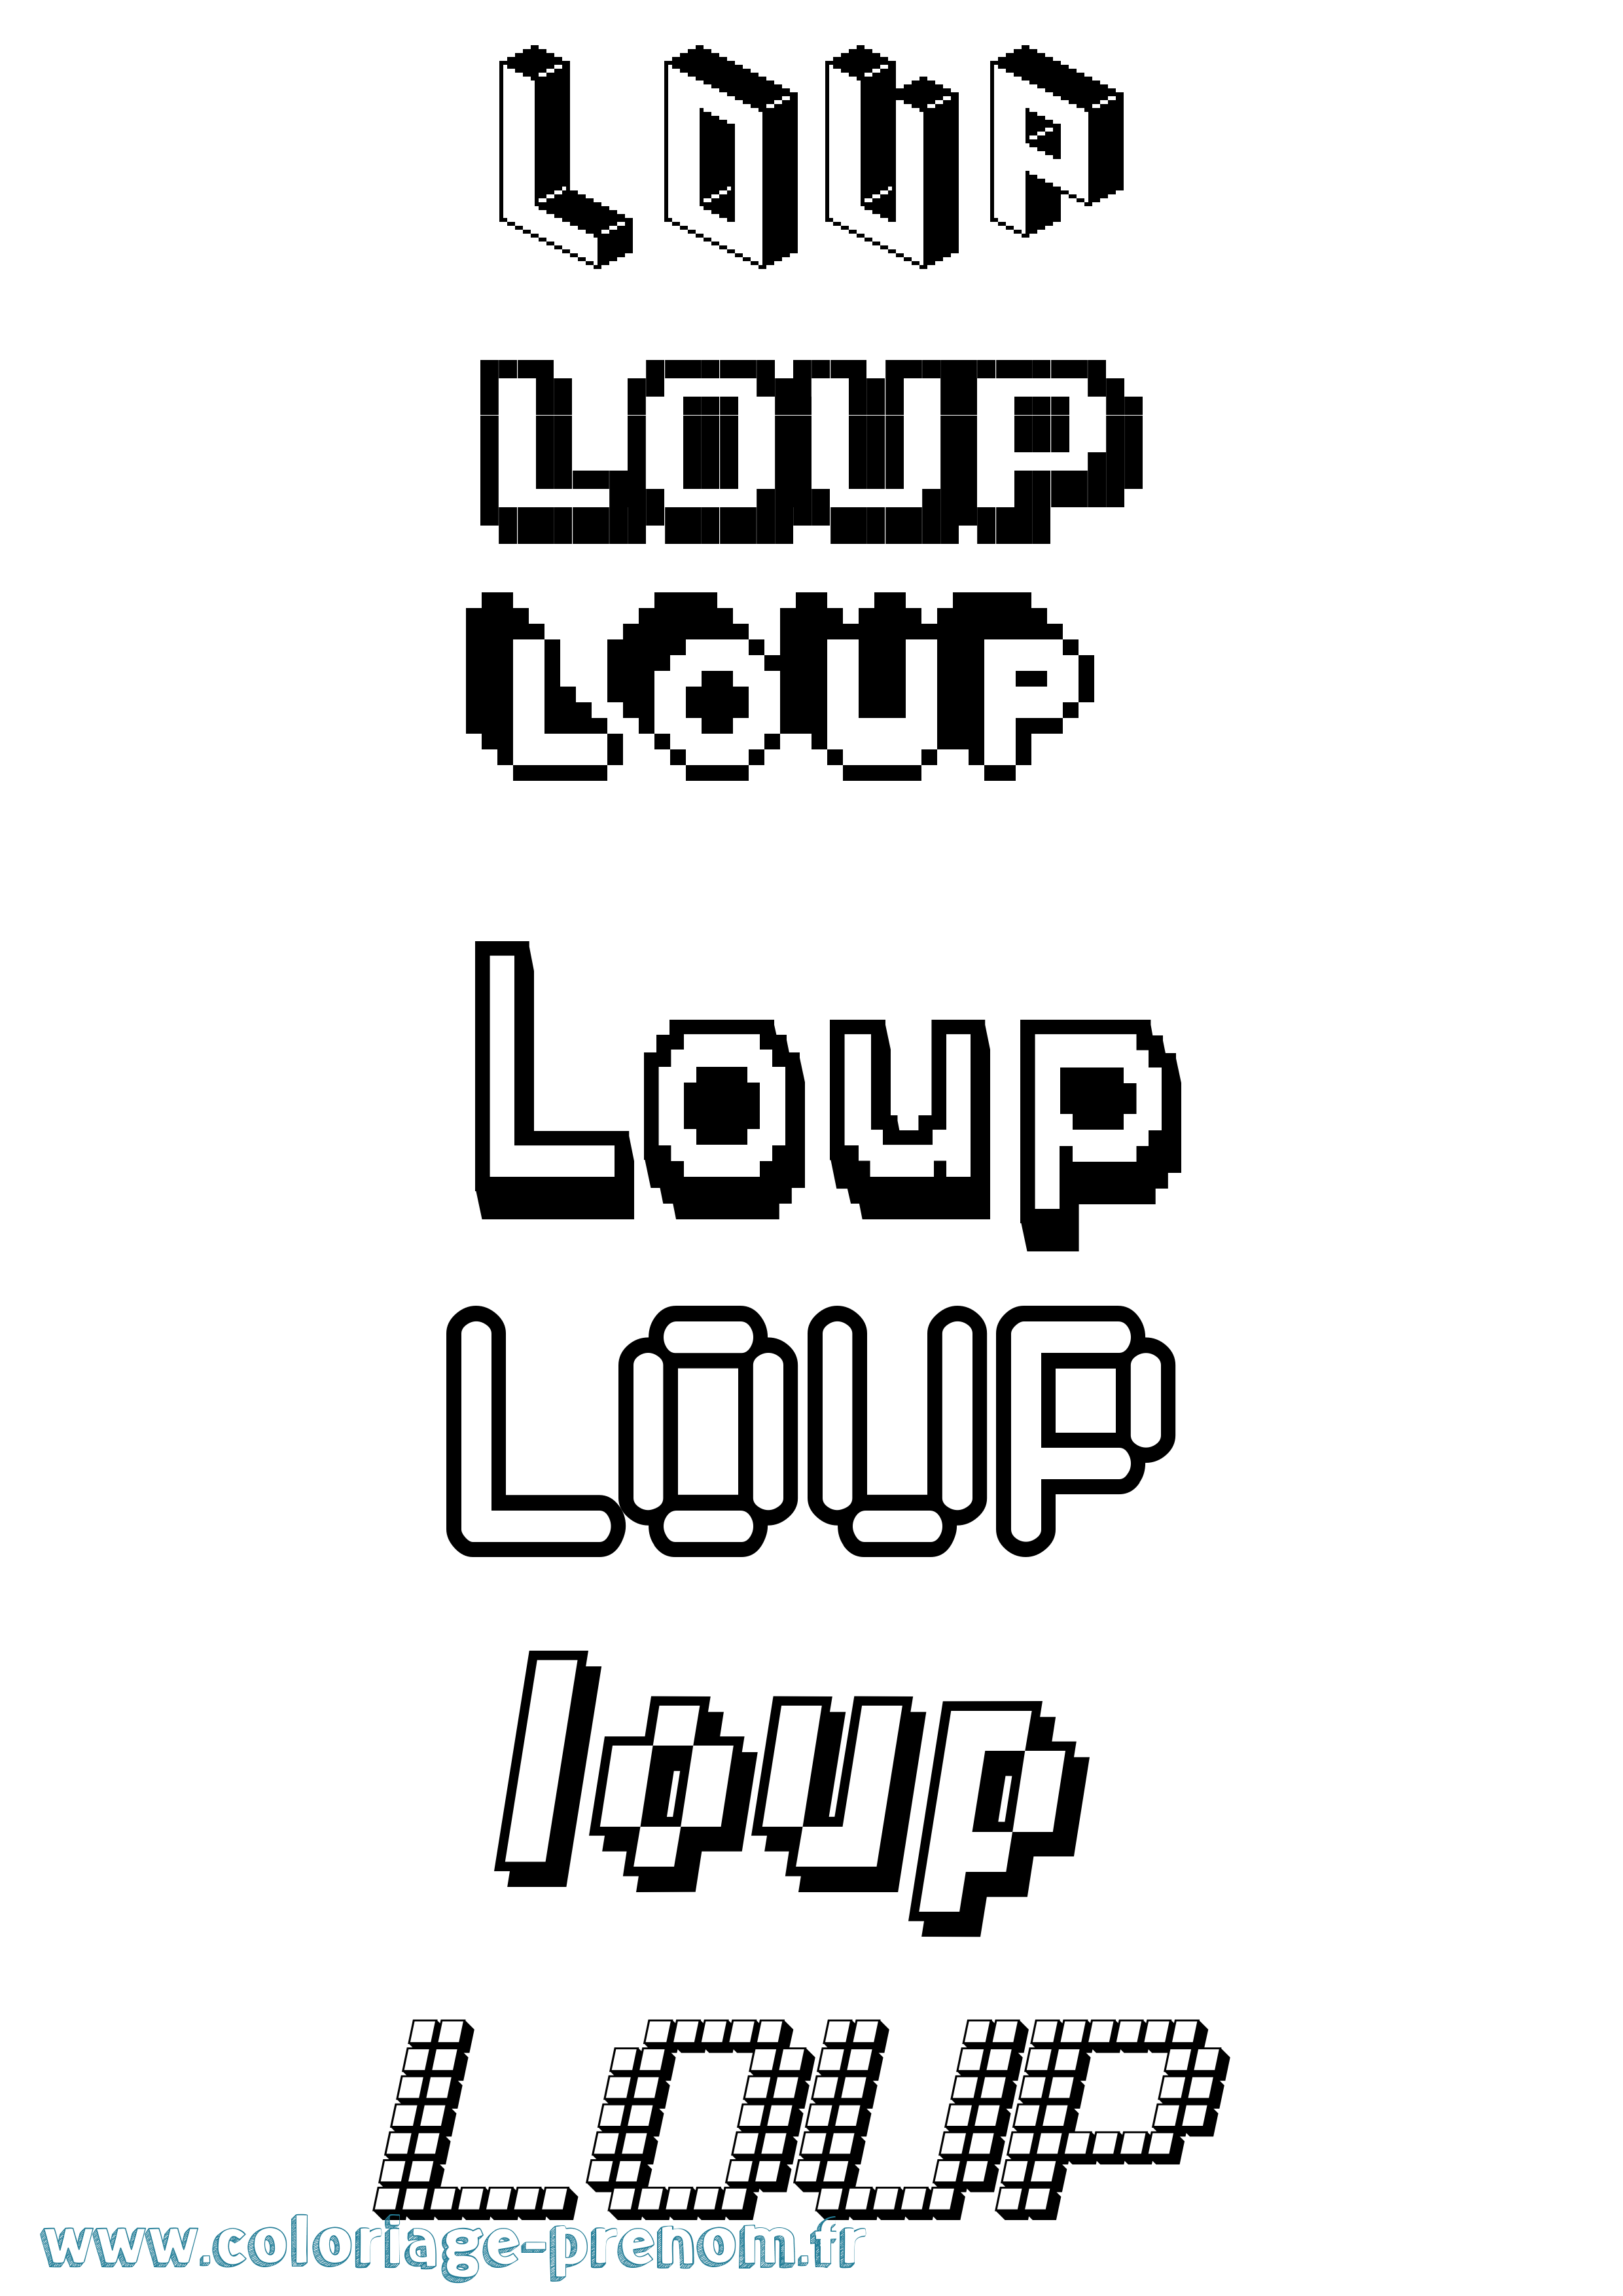 Coloriage prénom Loup Pixel